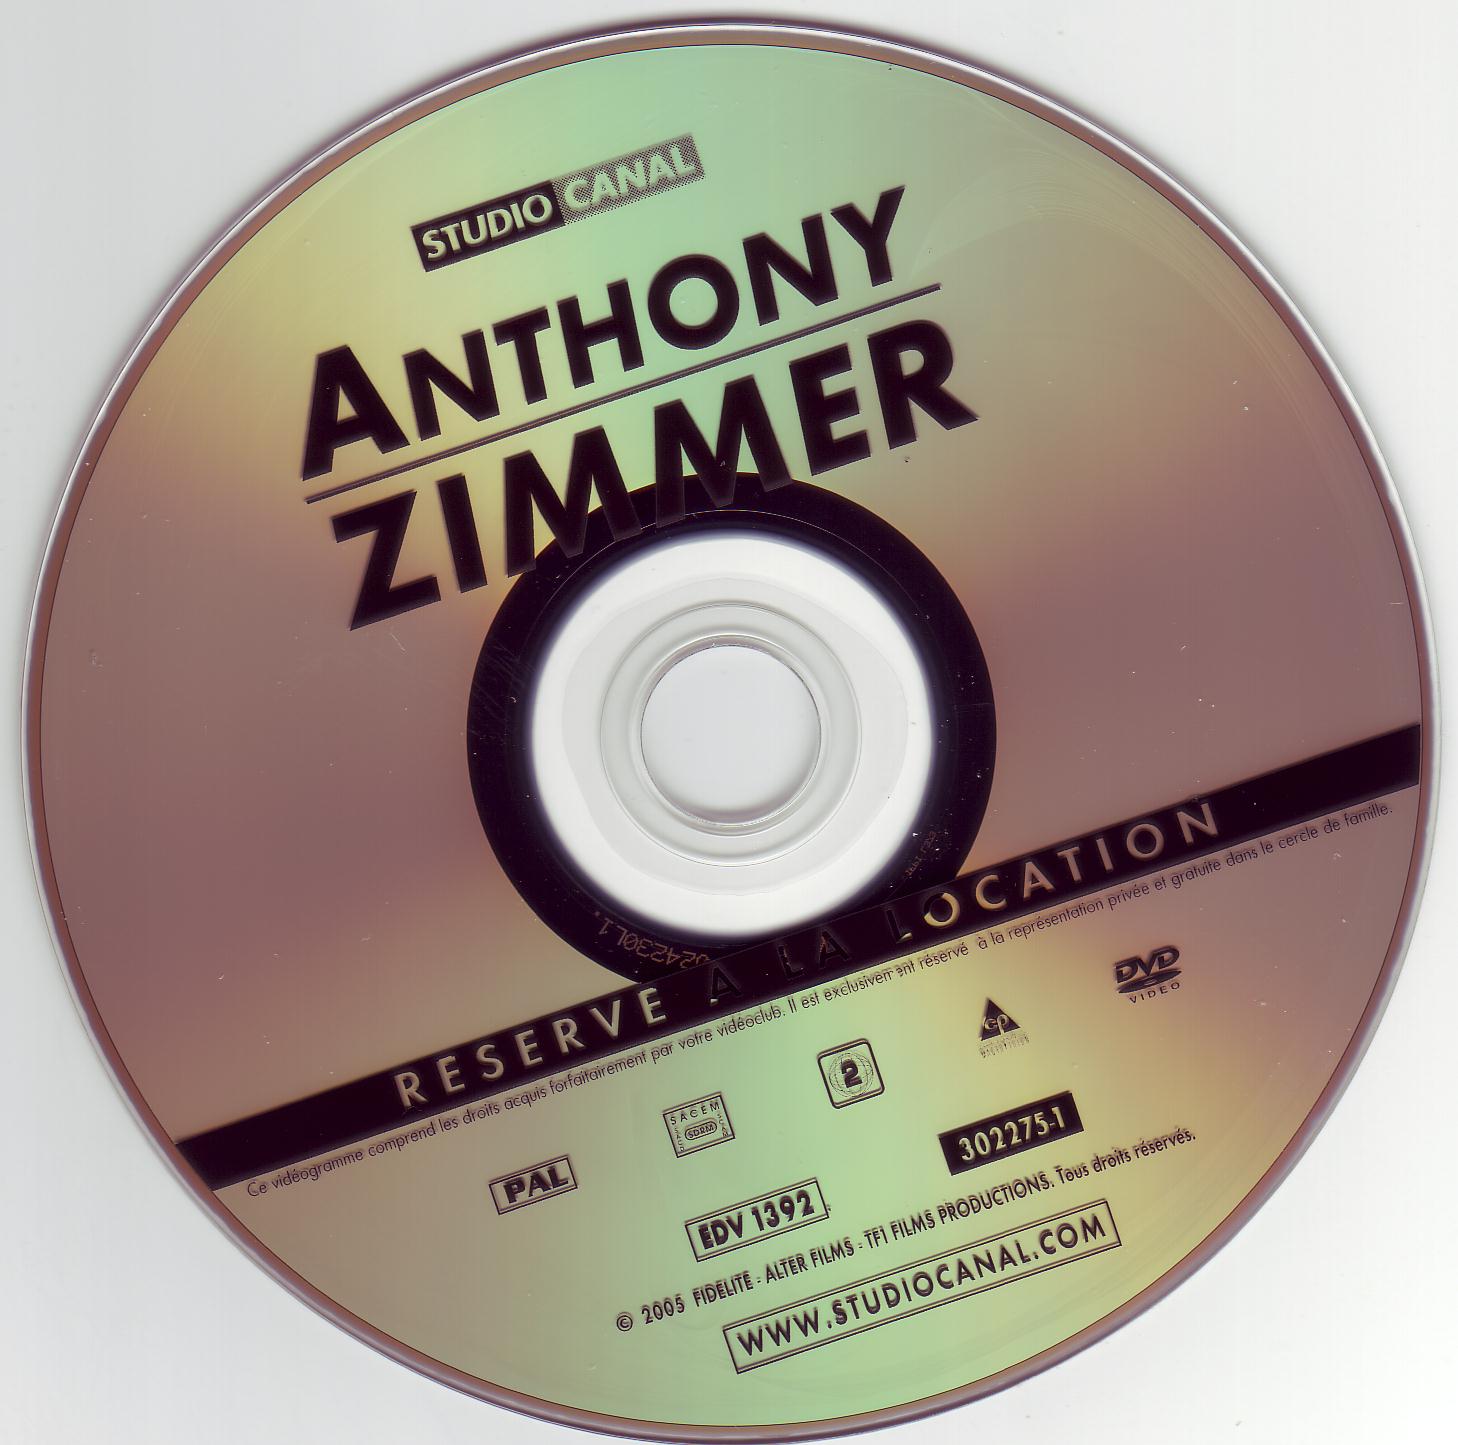 Anthony Zimmer